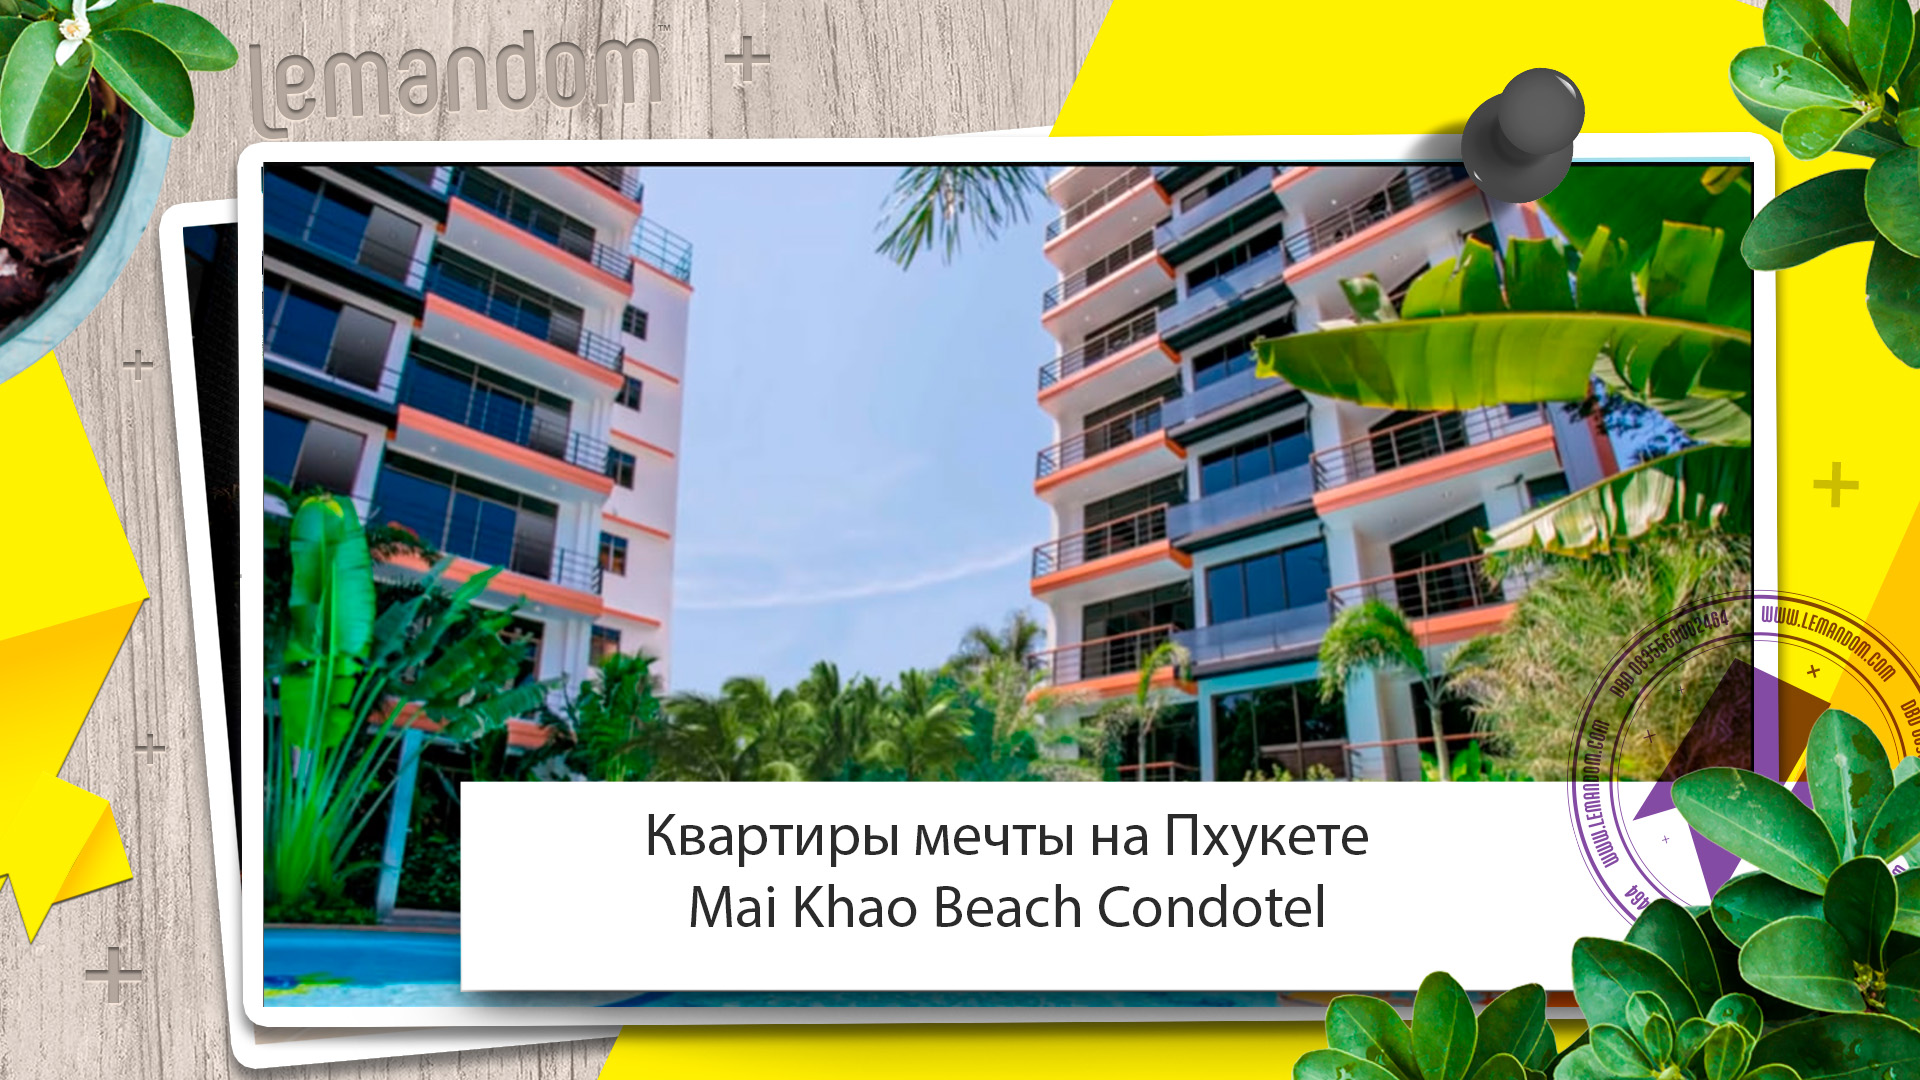 Квартира Пхукет купить не дорого. Май Као пляж цены в рублях. Агентство недвижимости LEMANDOM.